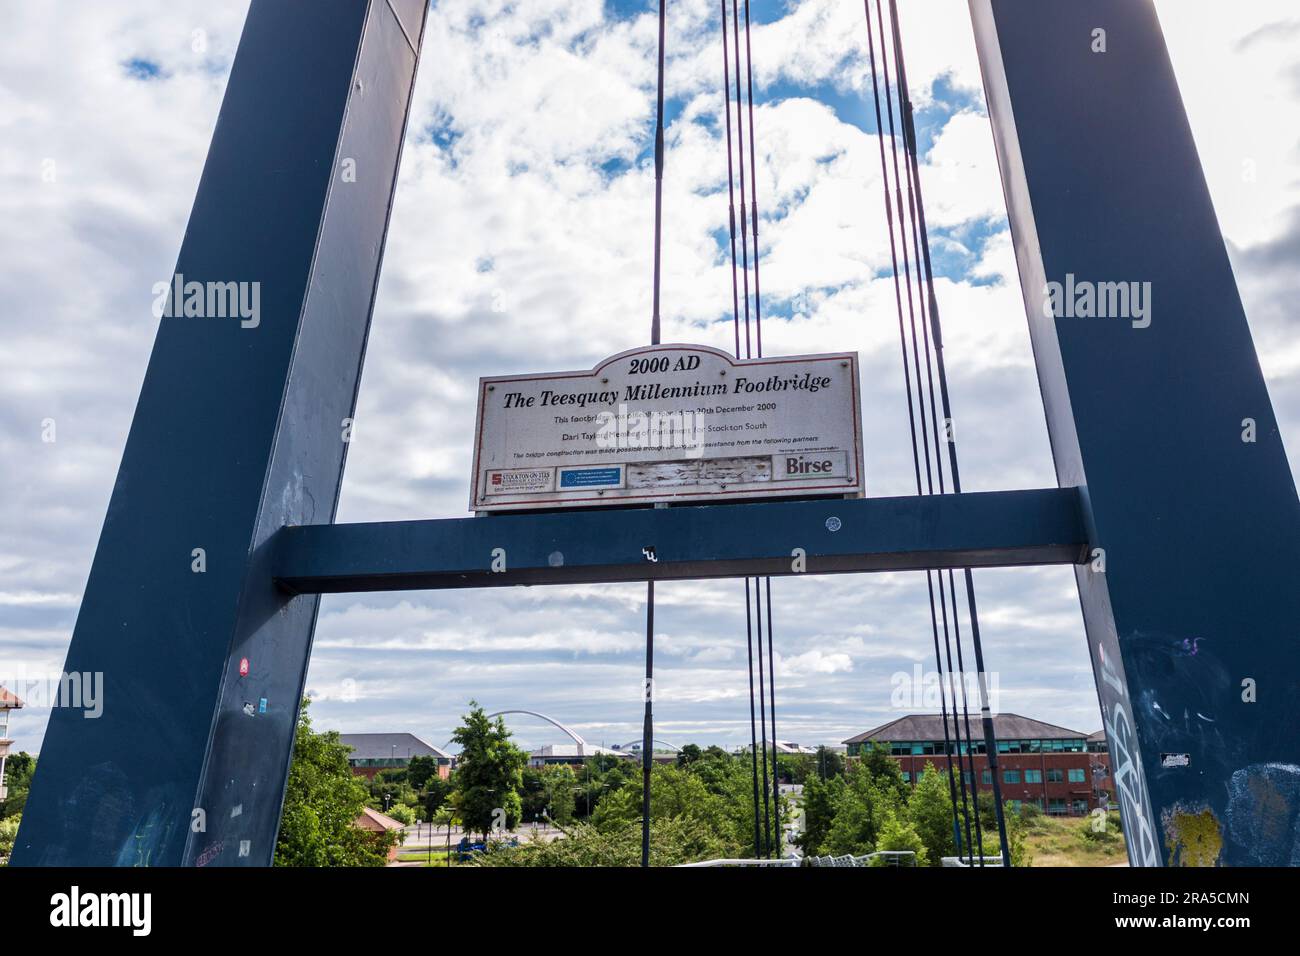 Primo piano della segnaletica sul ponte pedonale Teesquay Millenium a Stockton on Tees, Inghilterra, Regno Unito Foto Stock